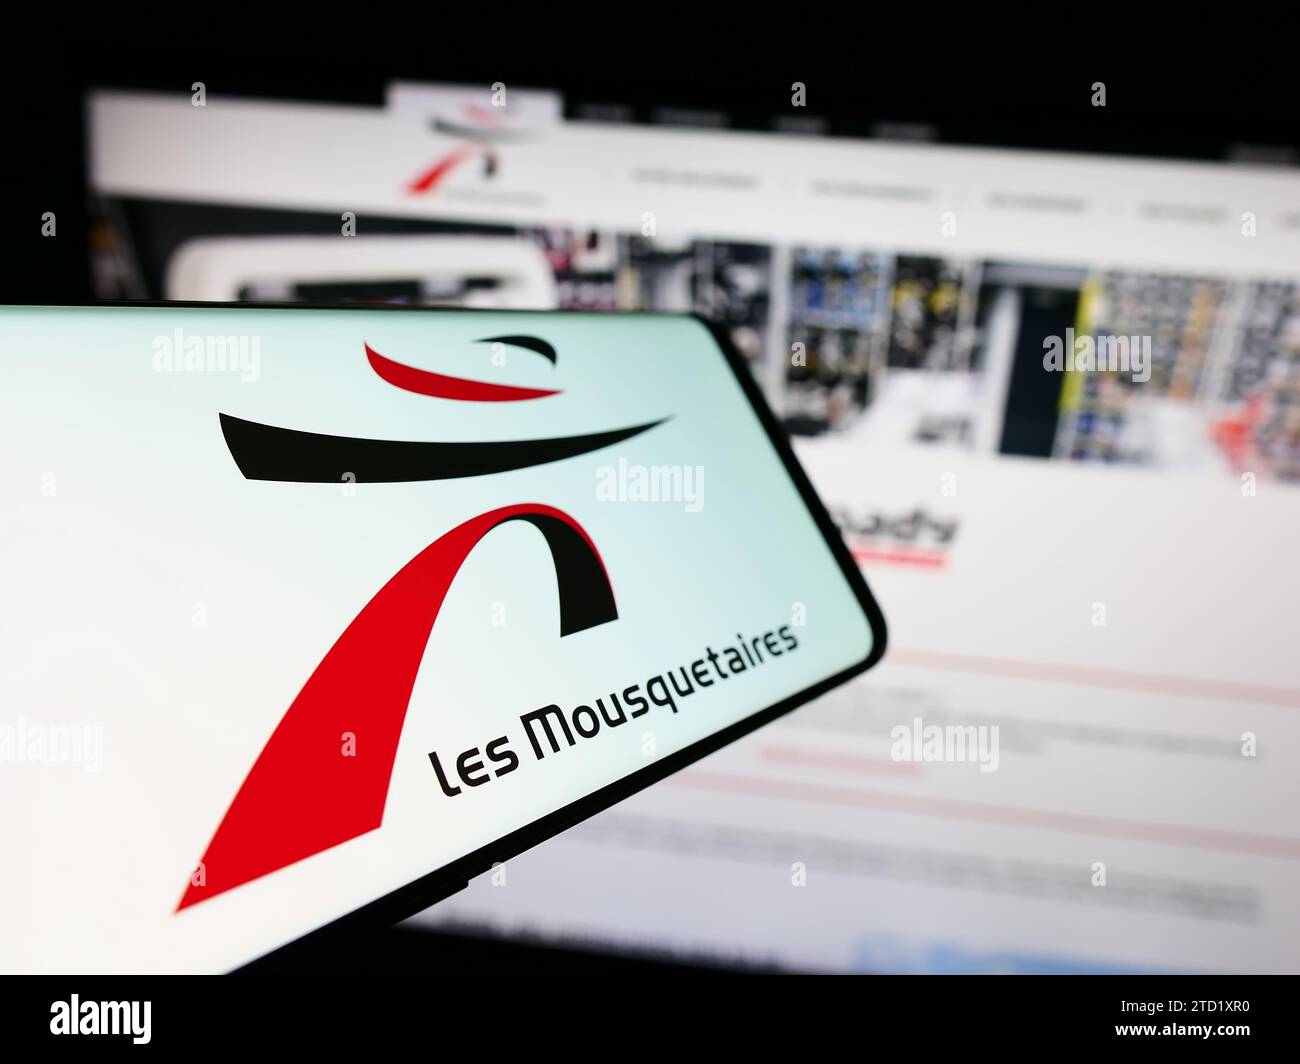 Smartphone con logo de la empresa francesa ITM Entreprises S.A. (Les Mousquetaires) delante del sitio web. Enfoque en centro-izquierda de la pantalla del teléfono. Foto de stock